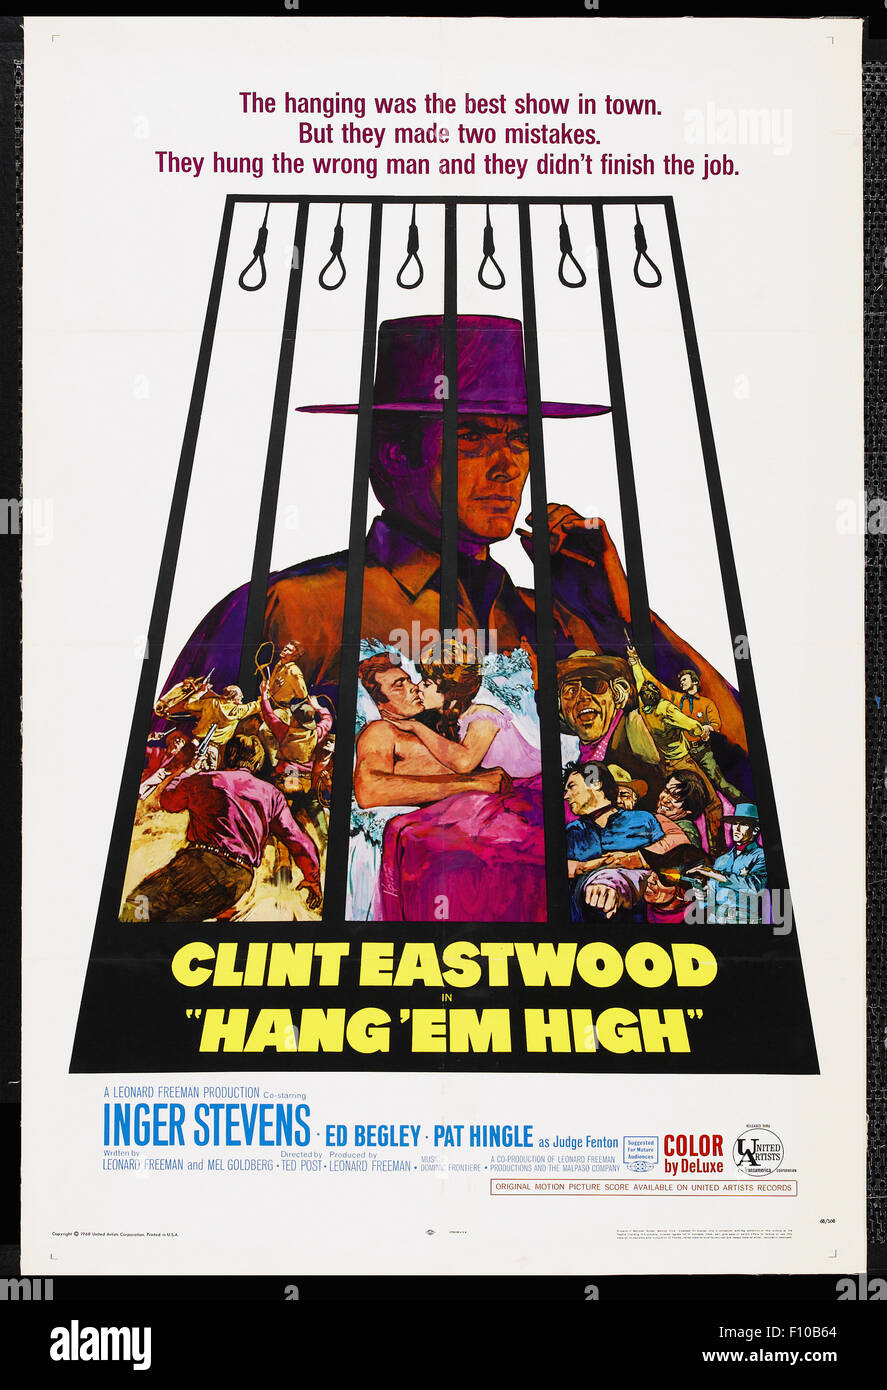 Hang 'Em High - póster de película Foto de stock